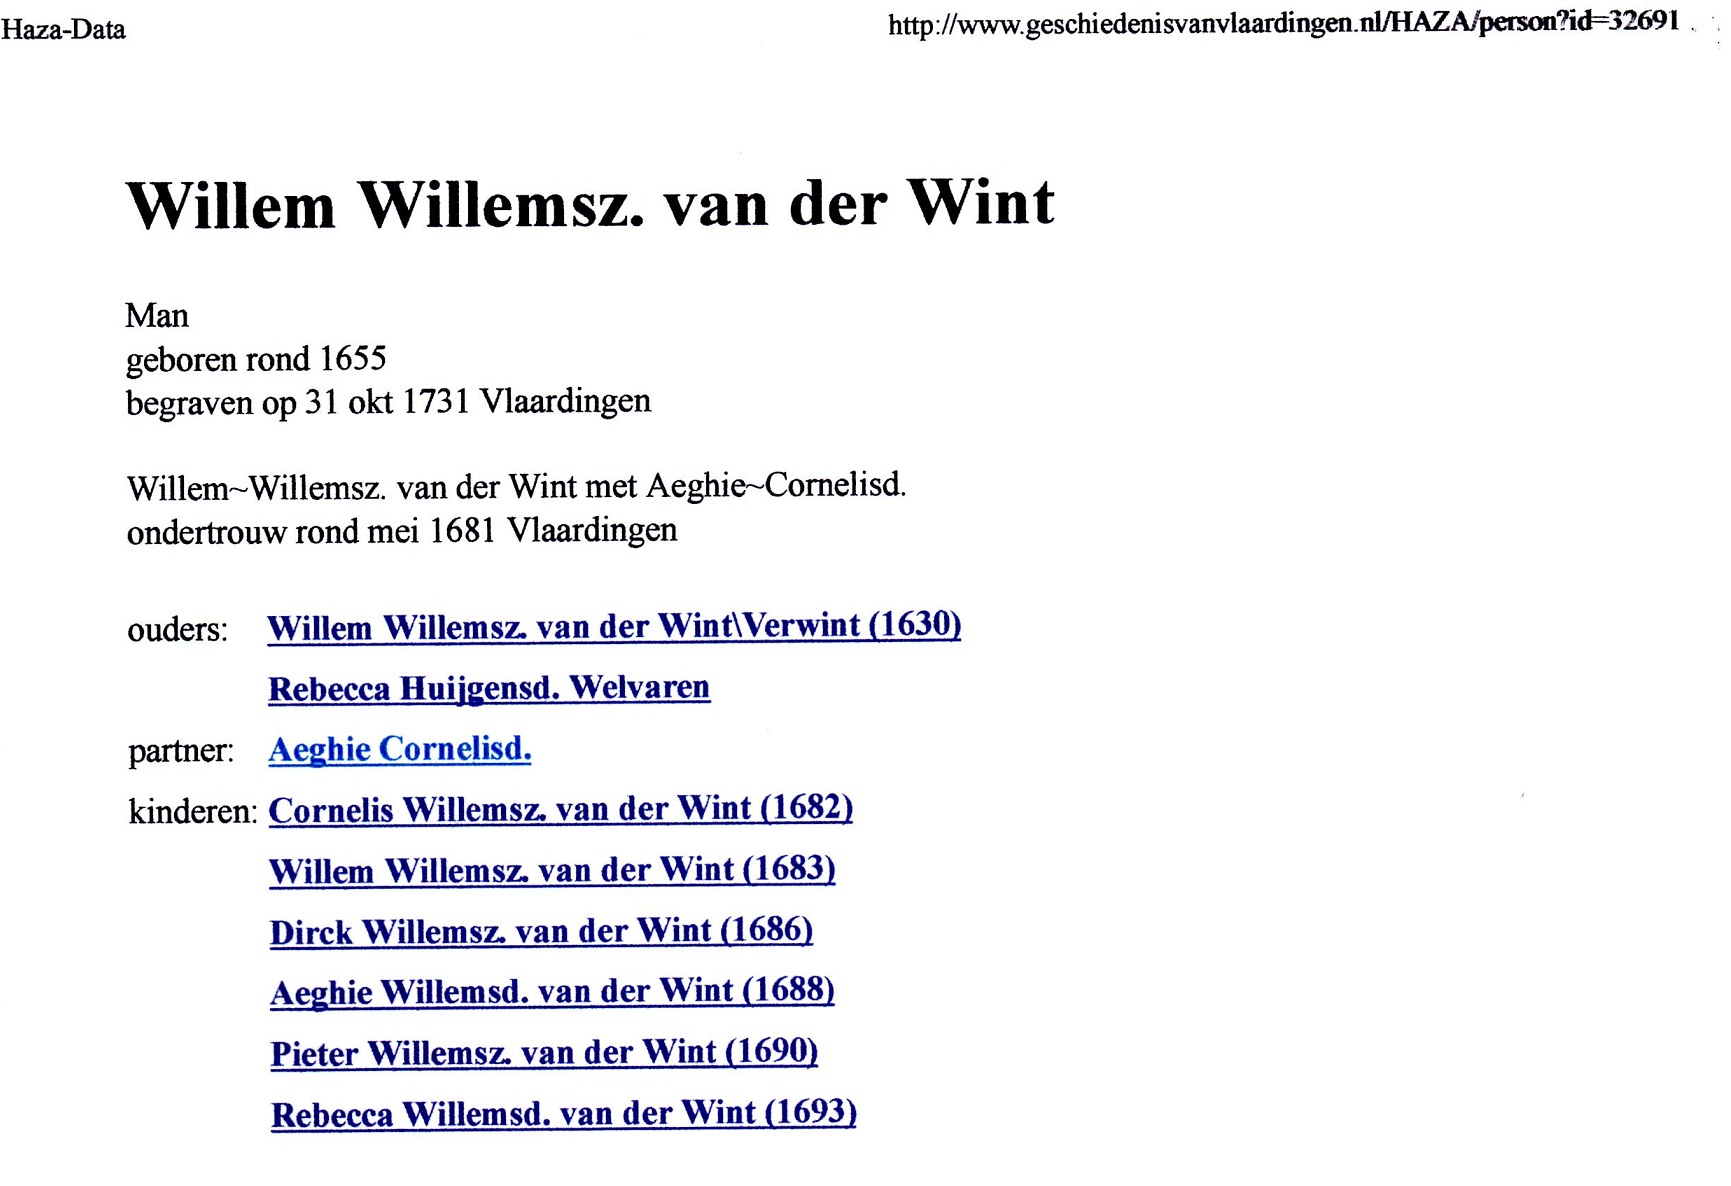 1653 Willem Willemsz van der Wint